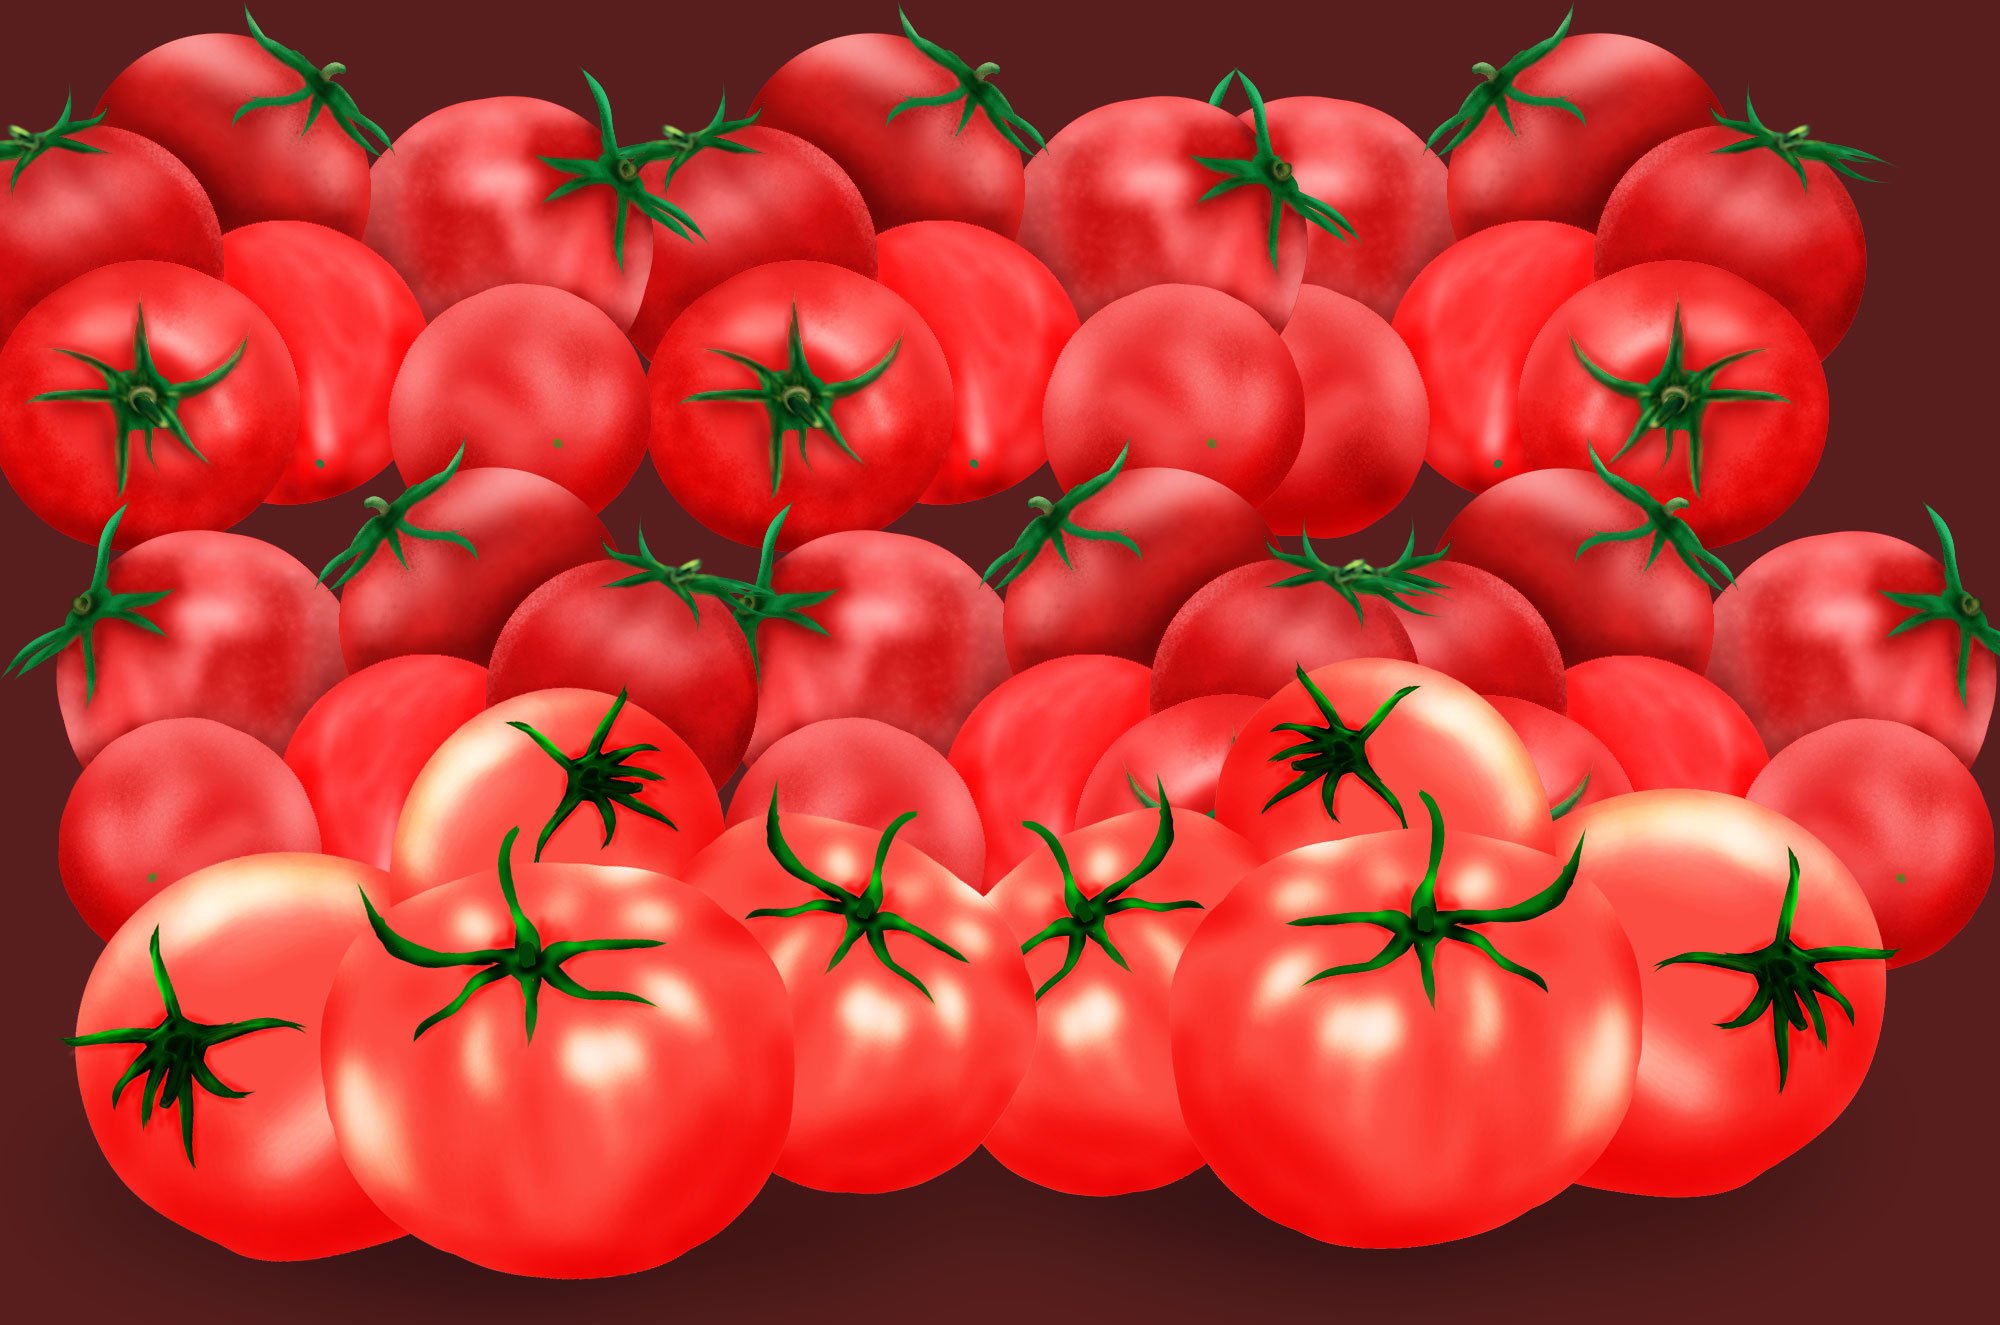 チコデザ トマトのイラスト無料素材集 リアルから シンプルまでとってもかわいいトマトさんが沢山あります 野菜イラストシリーズの トマトでした T Co D5tsvgbafz T Co Tyvrb55xbo Twitter